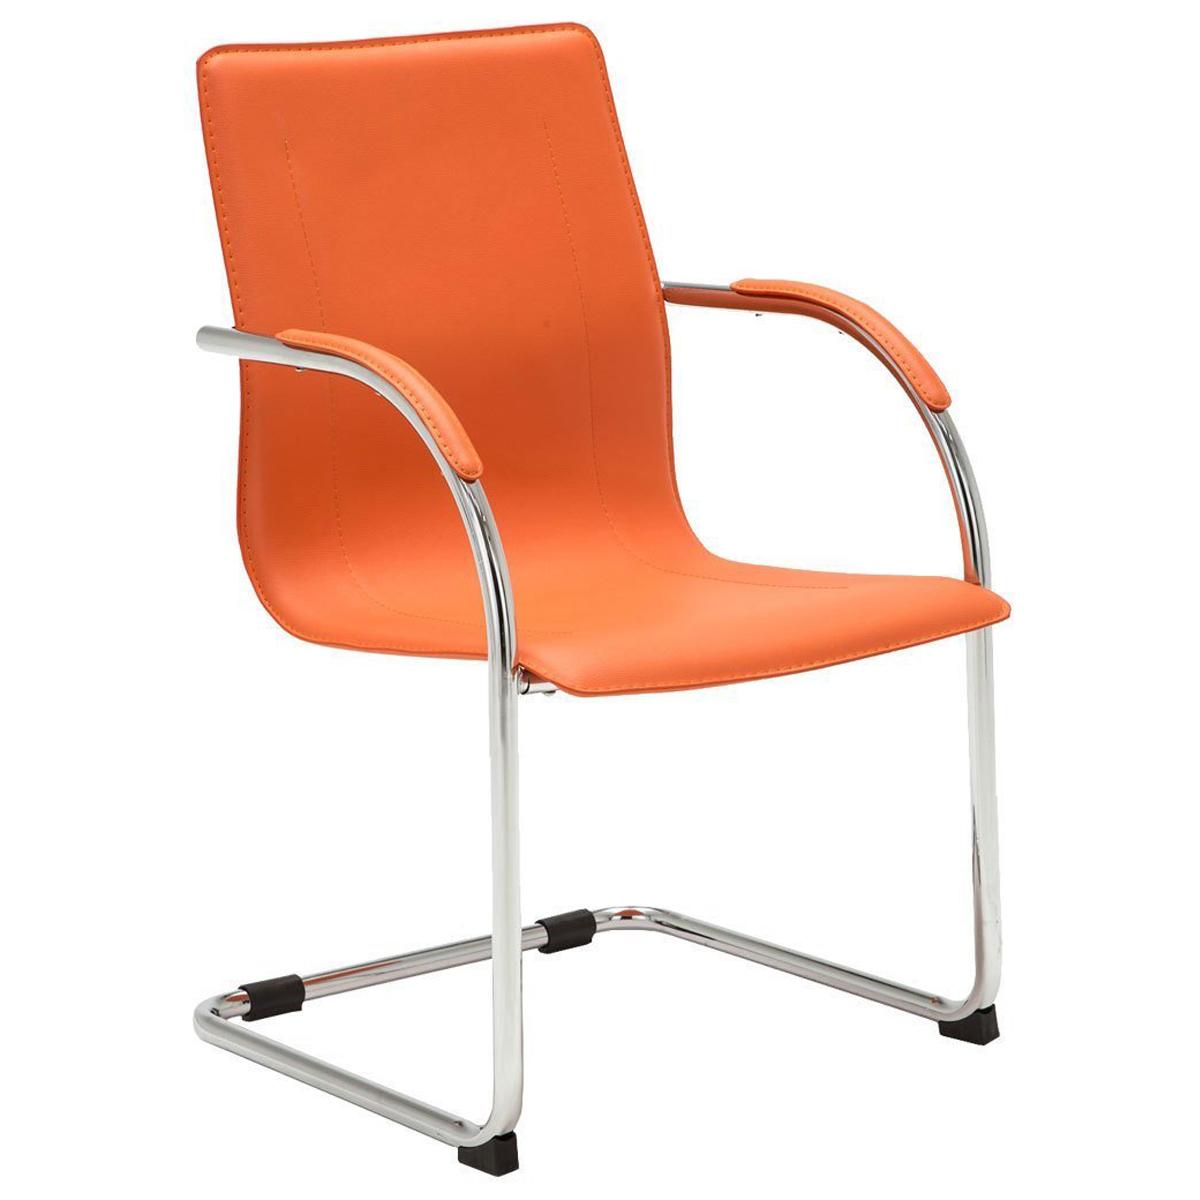 Chaise Visiteur FLAP, Structure Métallique, Design élégant et moderne, Cuir, Orange